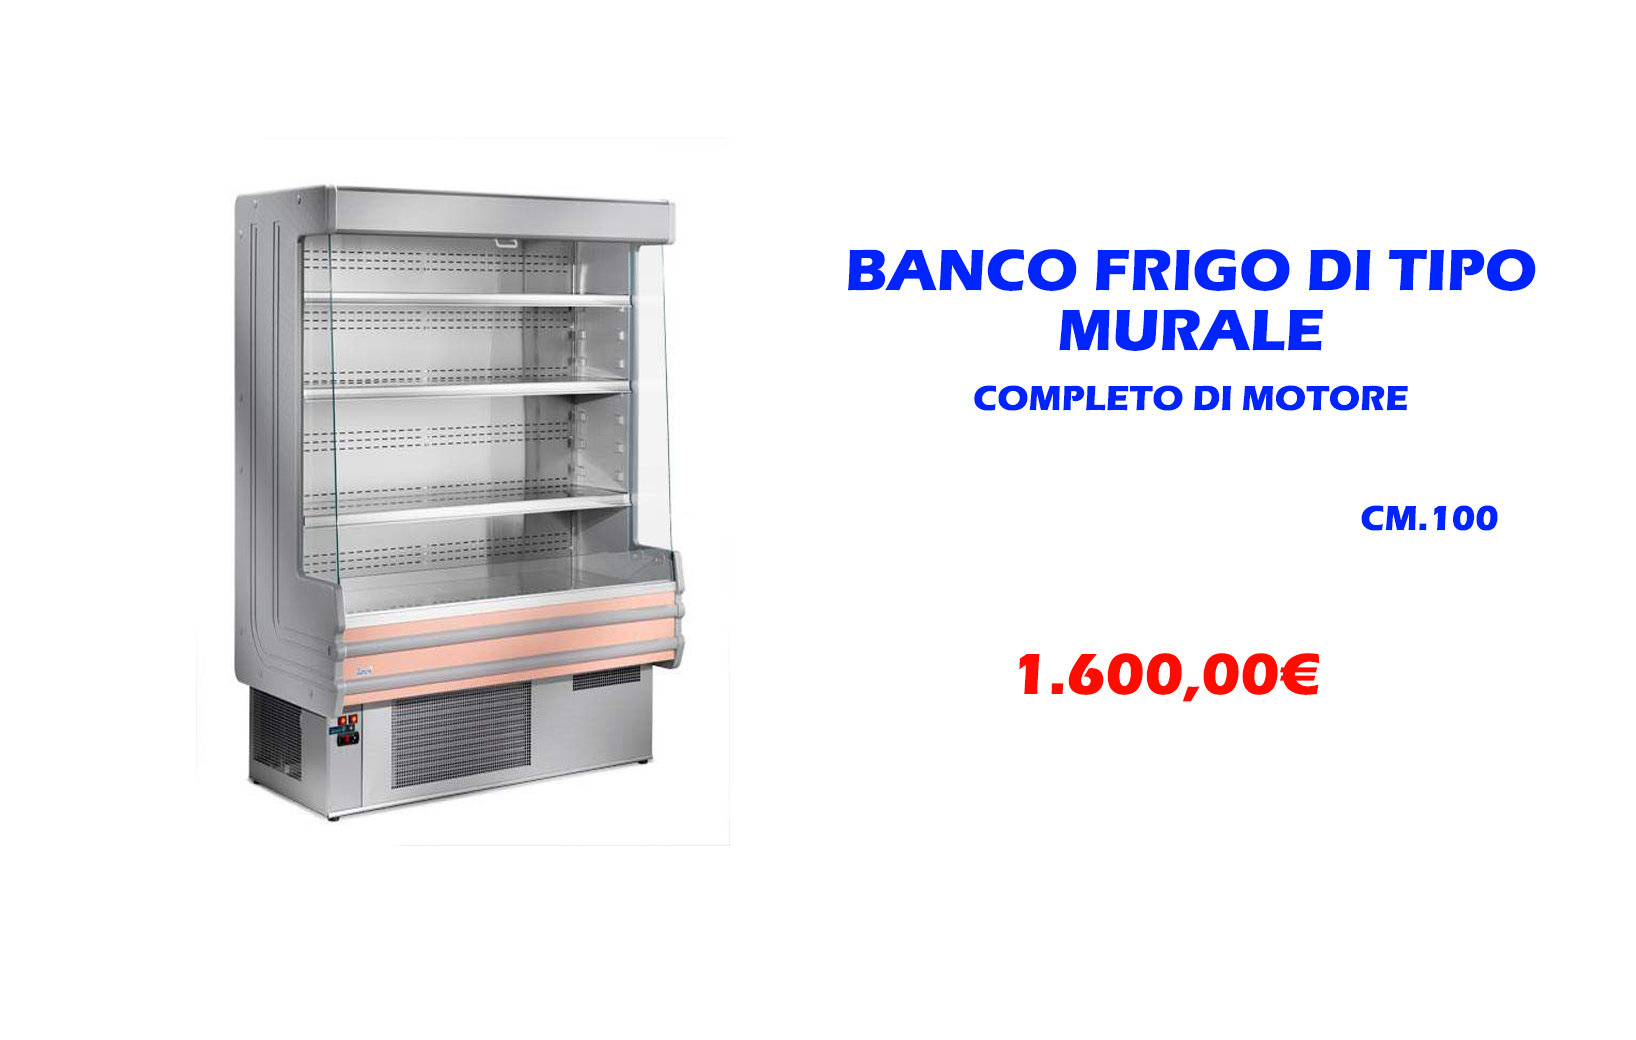 Banco frigo